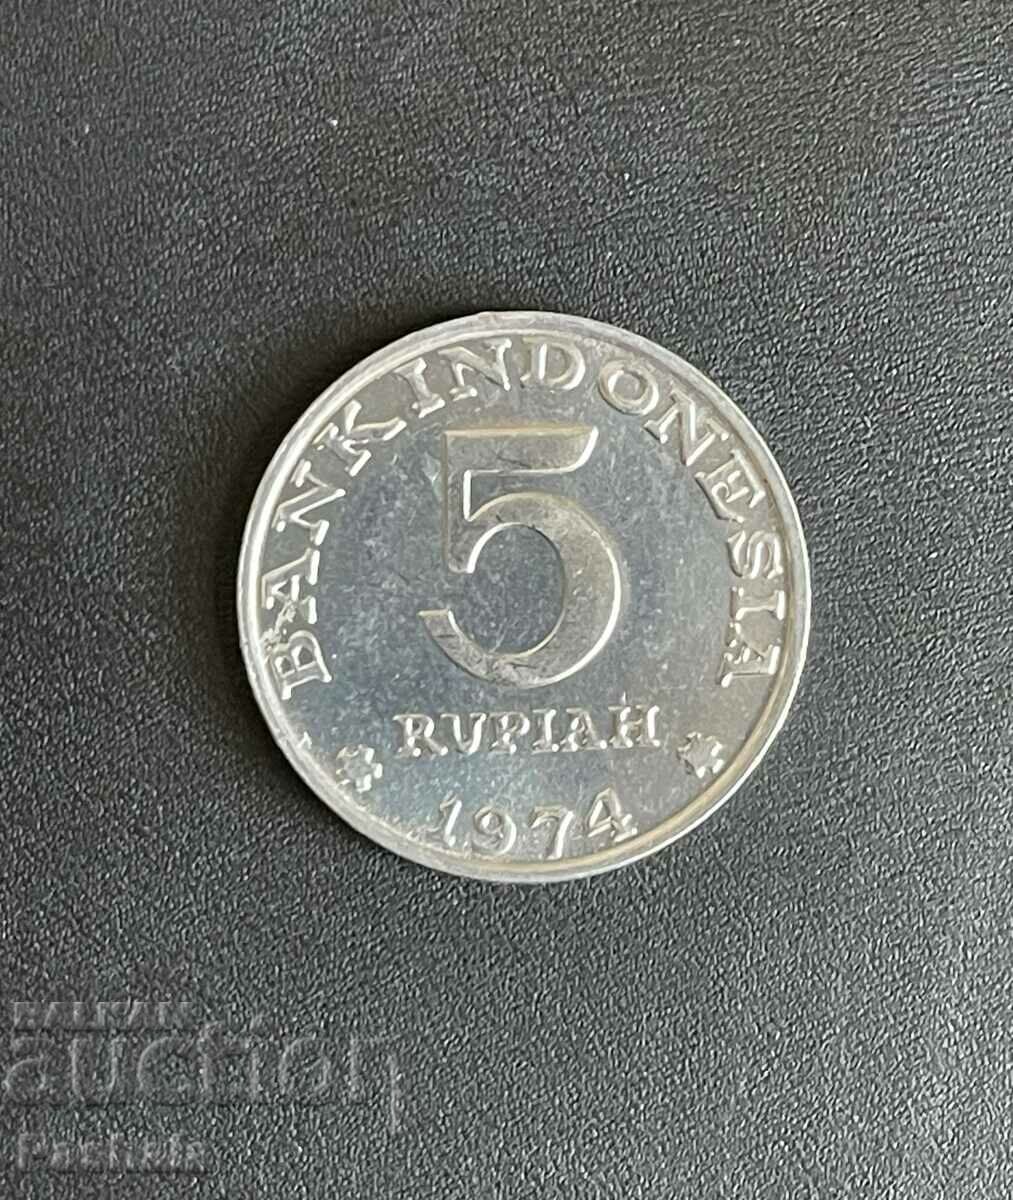 Индонезия 5 рупия 1974 г.